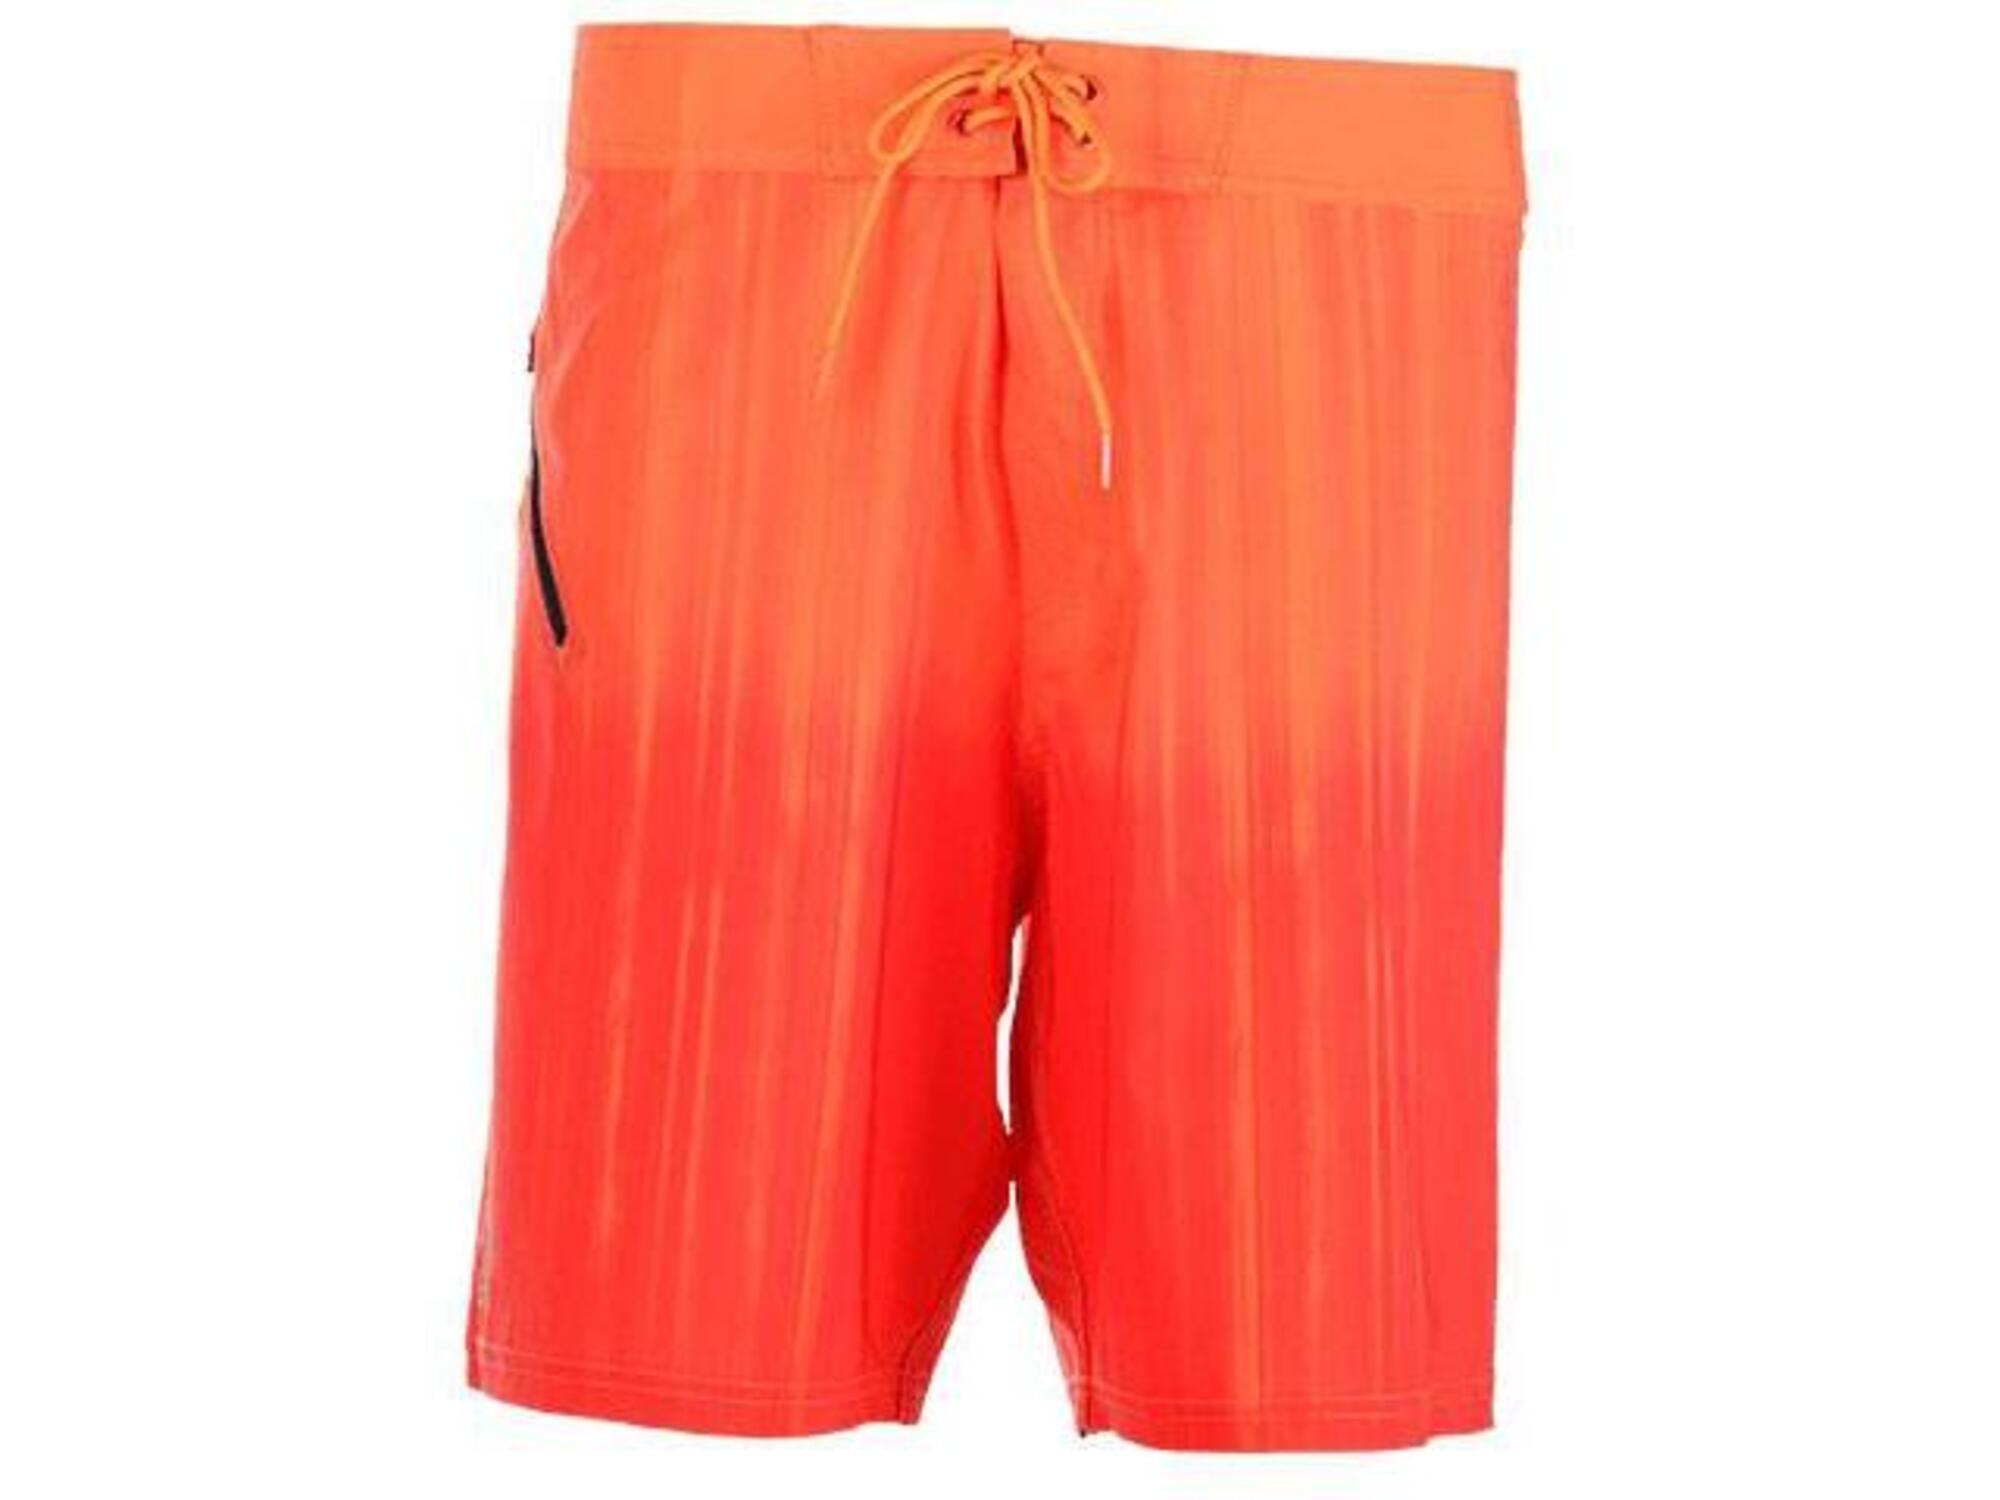 STARBOARD moške kopalne hlače Sup 17 sba SB053- 190017000, oranžne